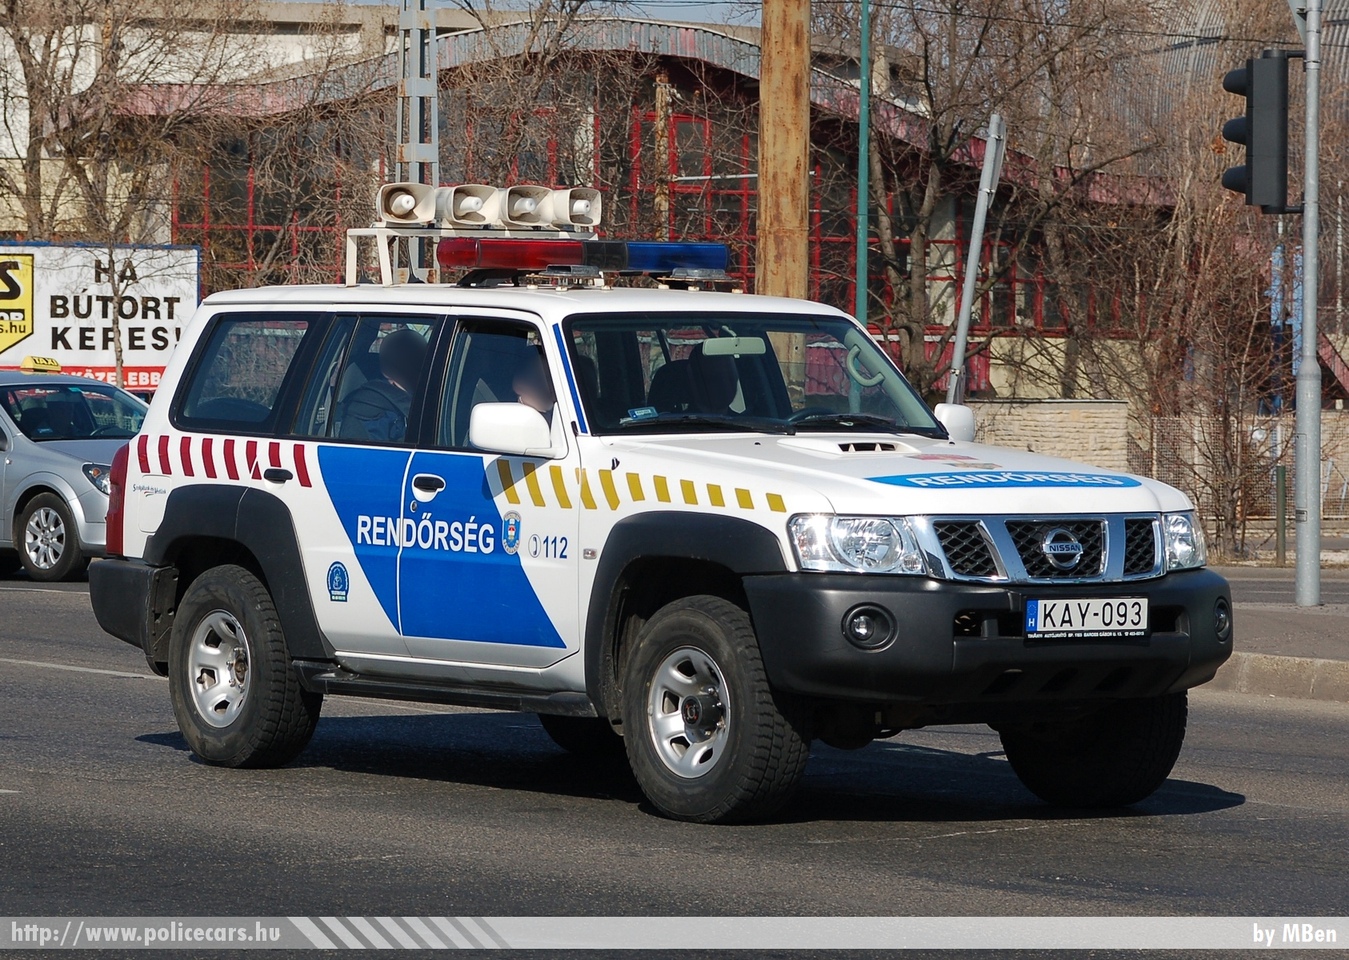 Nissan Patrol, fotó: MBen
Keywords: magyar Magyarország rendőr rendőrautó rendőrség Hungary hungarian police policecar KAY-093